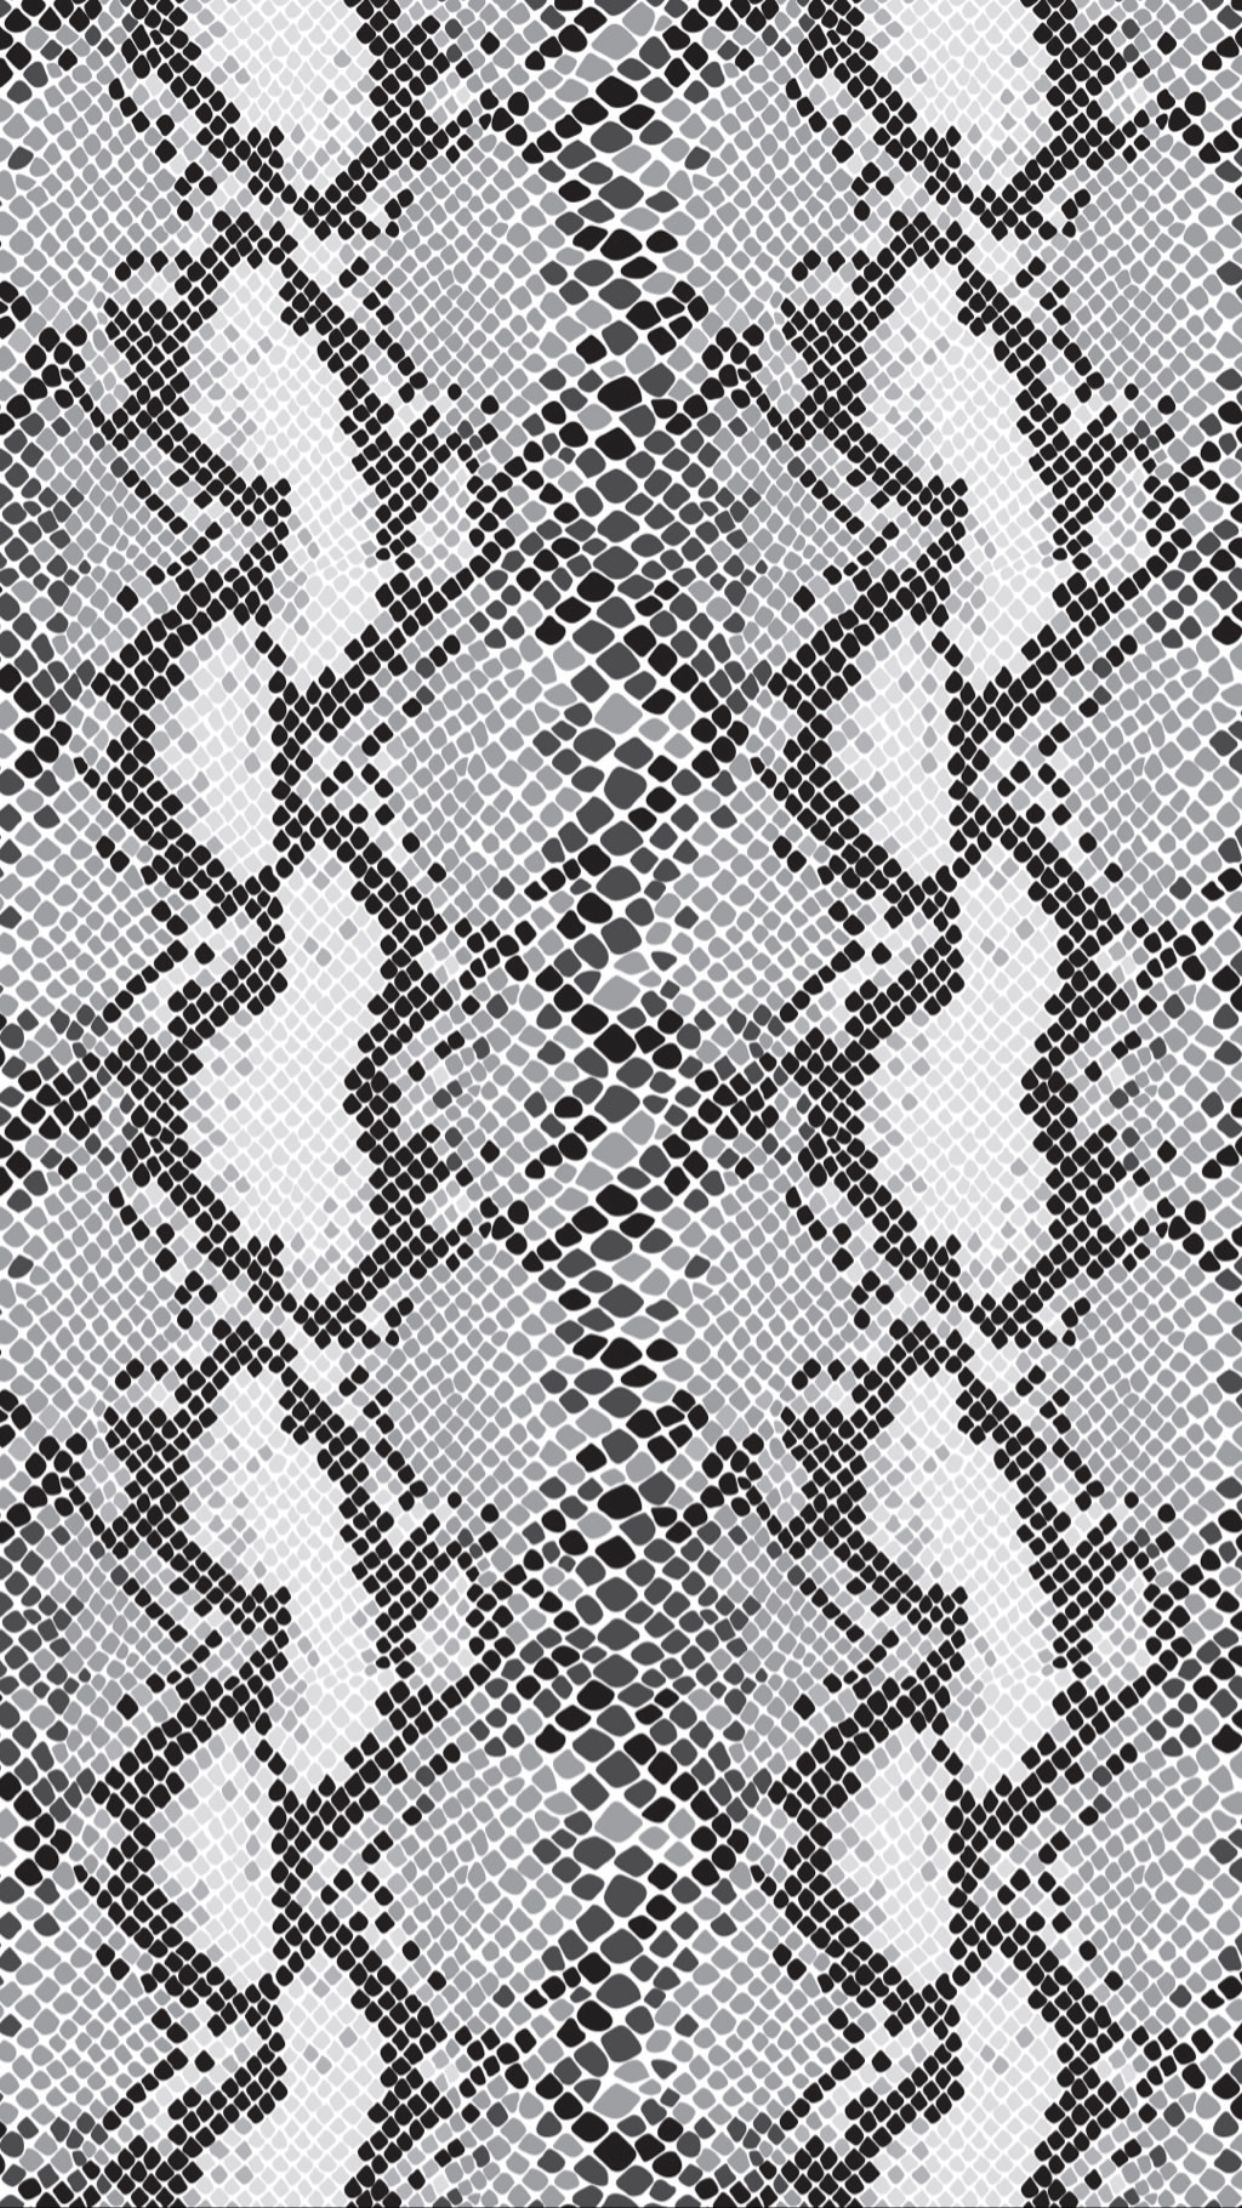 ヘビ革の壁紙,パターン,繊維,設計,パターン,モノクローム